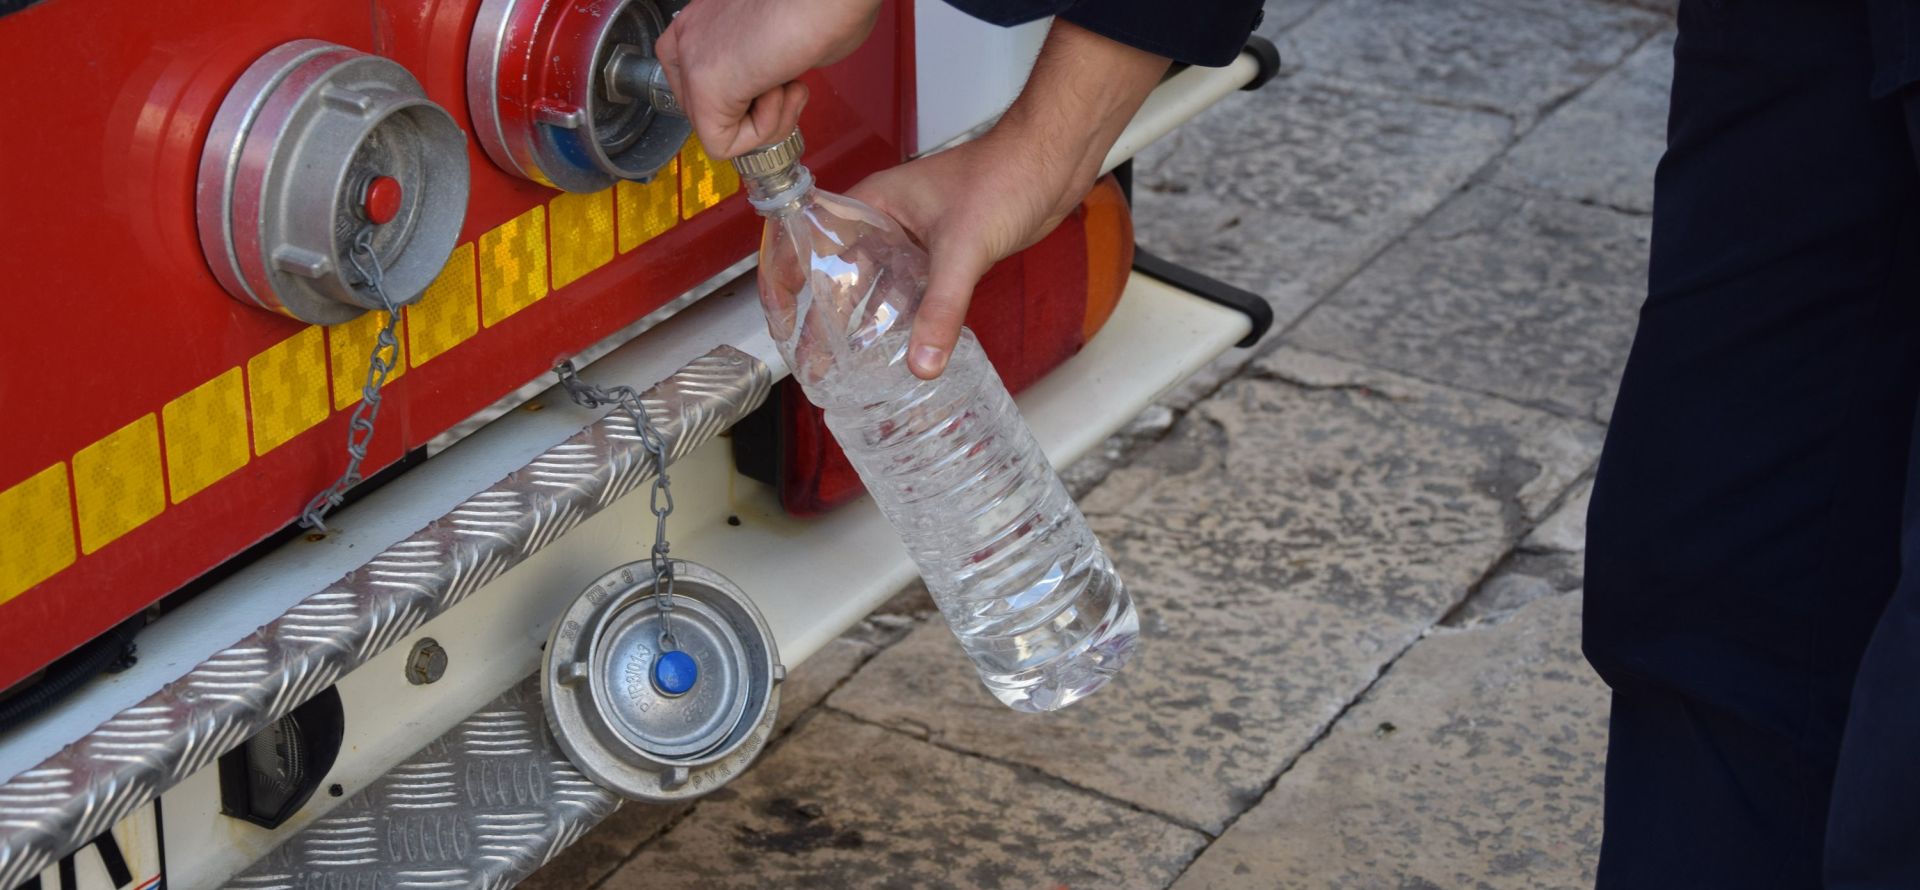 Dubrovnik, 31.10.2018. - Kia je prouzroèila zamuæenje vode u vodoopskrbnom sustavu Dubrovnika pa je gradska tvrtka Vodovod u suradnji s JVP Dubrovaèkim vatrogascima u srijedu organizirala opskrbu pitkom vodom za graðane na dvanaest lokacija, a meðu njima i na Stradunu. foto HINA/ Baldo MARUNÈIÆ/ ml